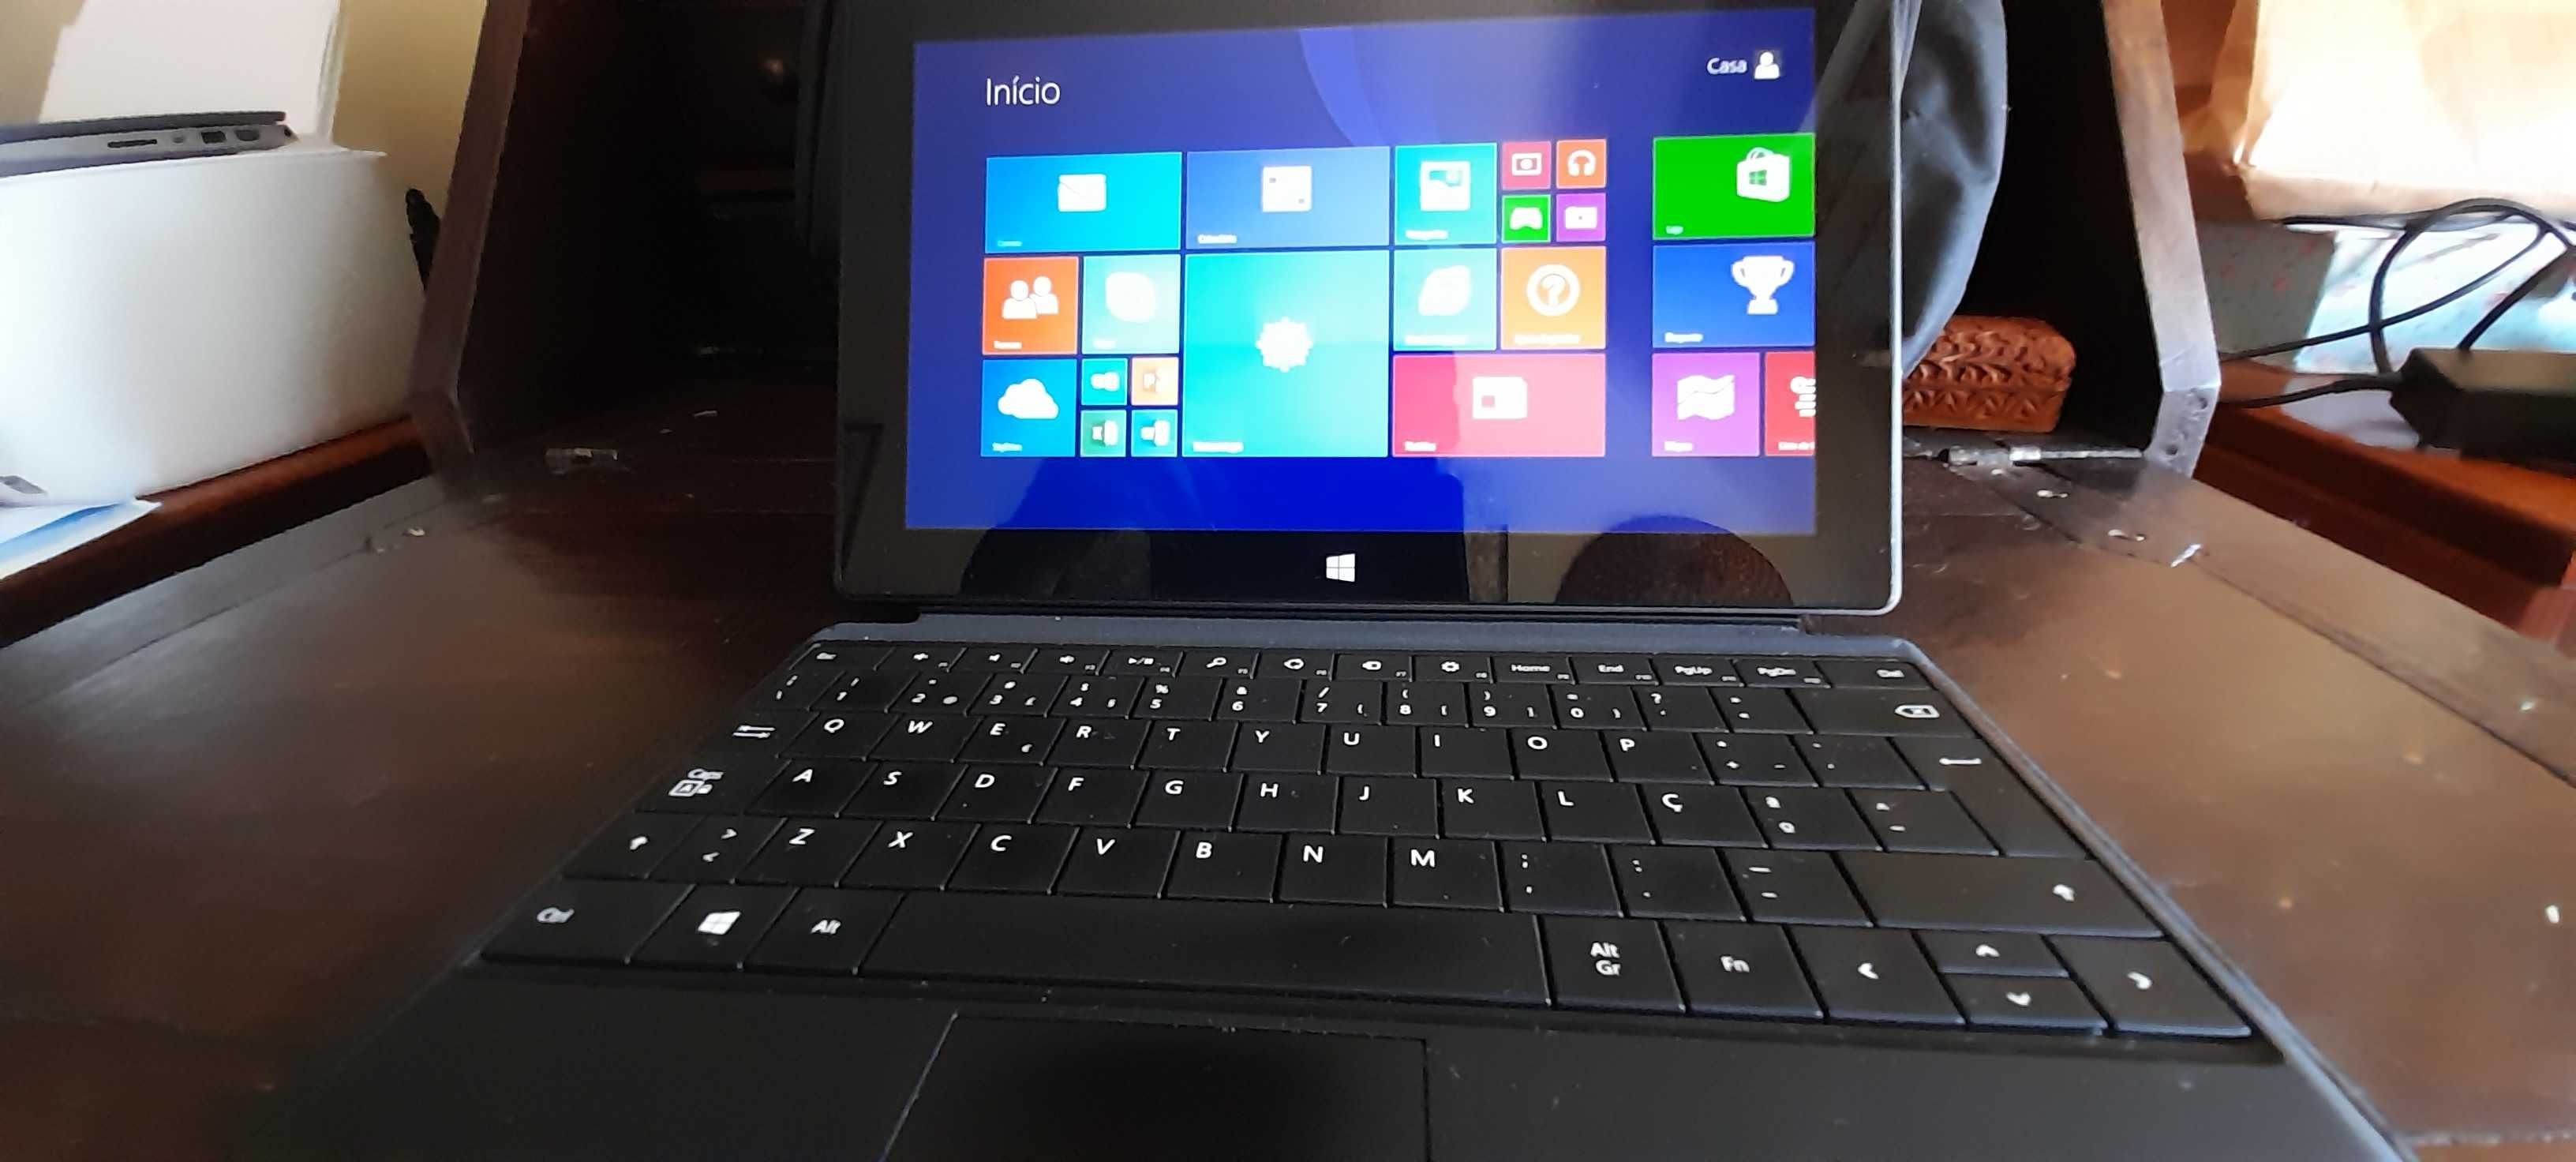 Surface RT 8.1 com teclado rígido, carregador e bolsa de transporte